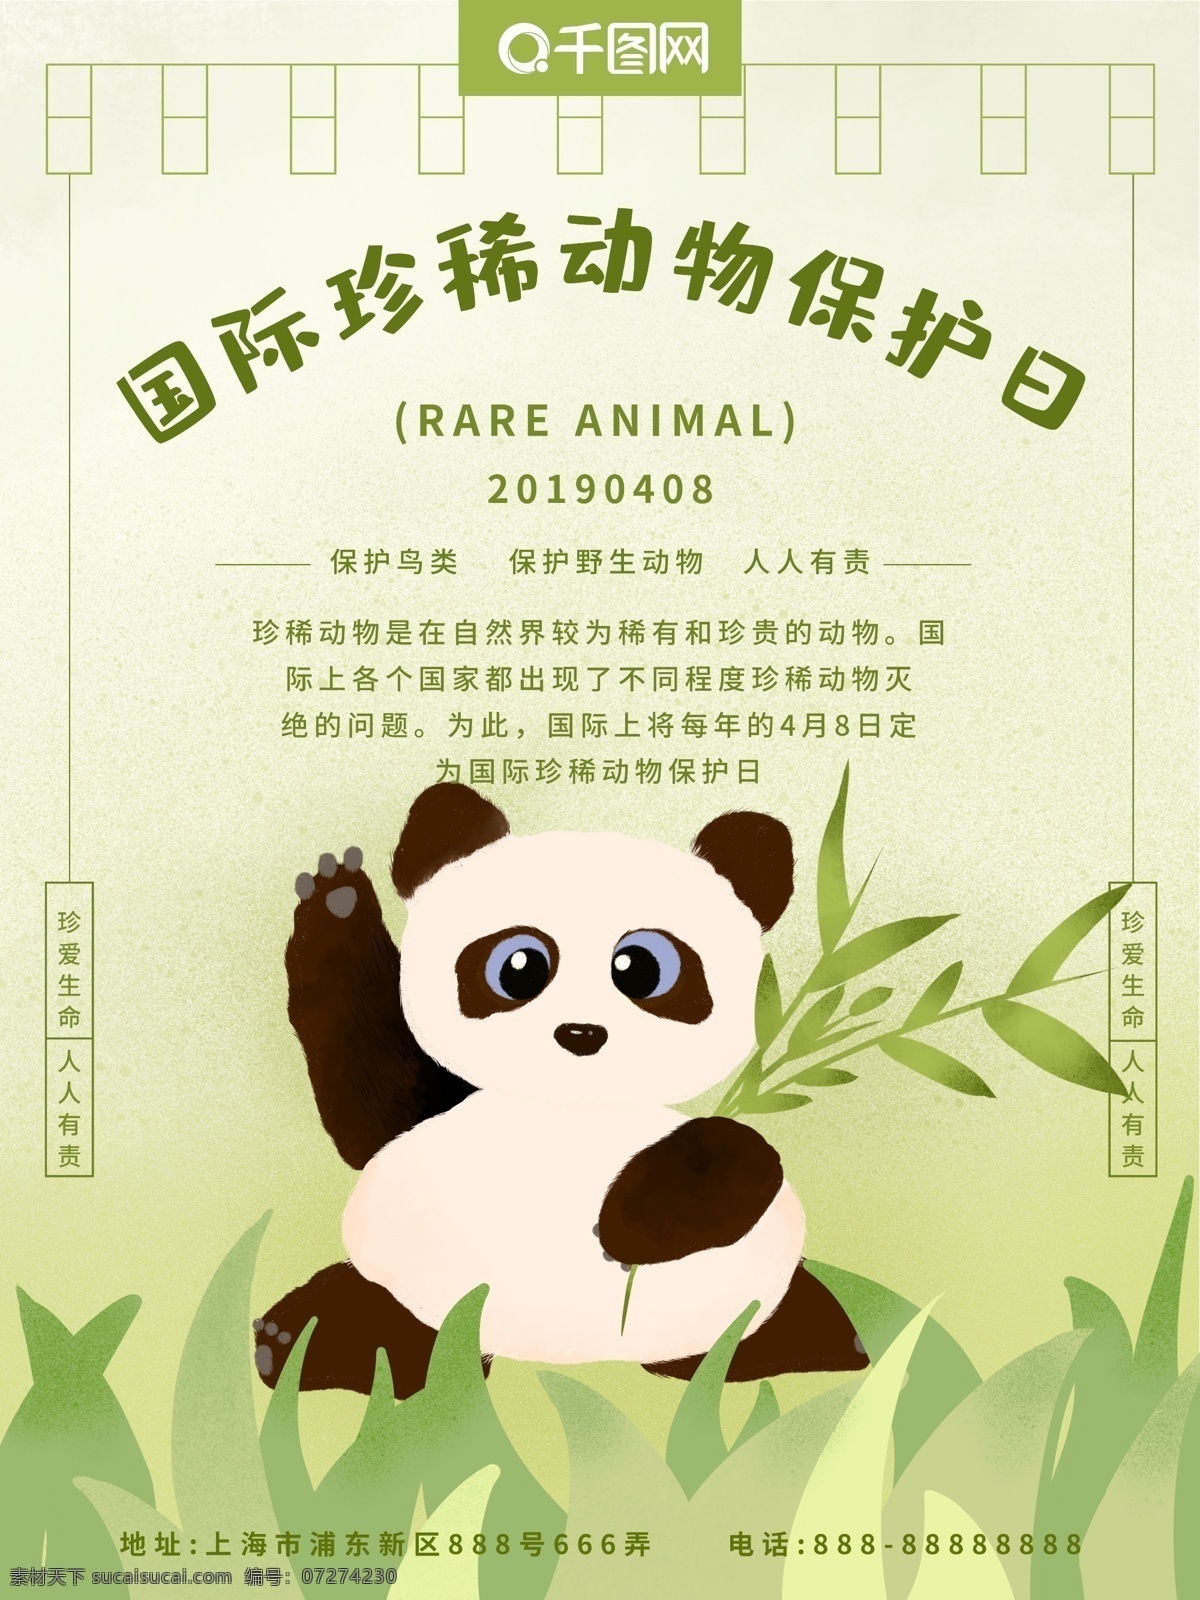 国际 珍惜 动物保护 日 熊猫 珍稀动物 保护日 手绘风 小清新 简约 绿色 原创